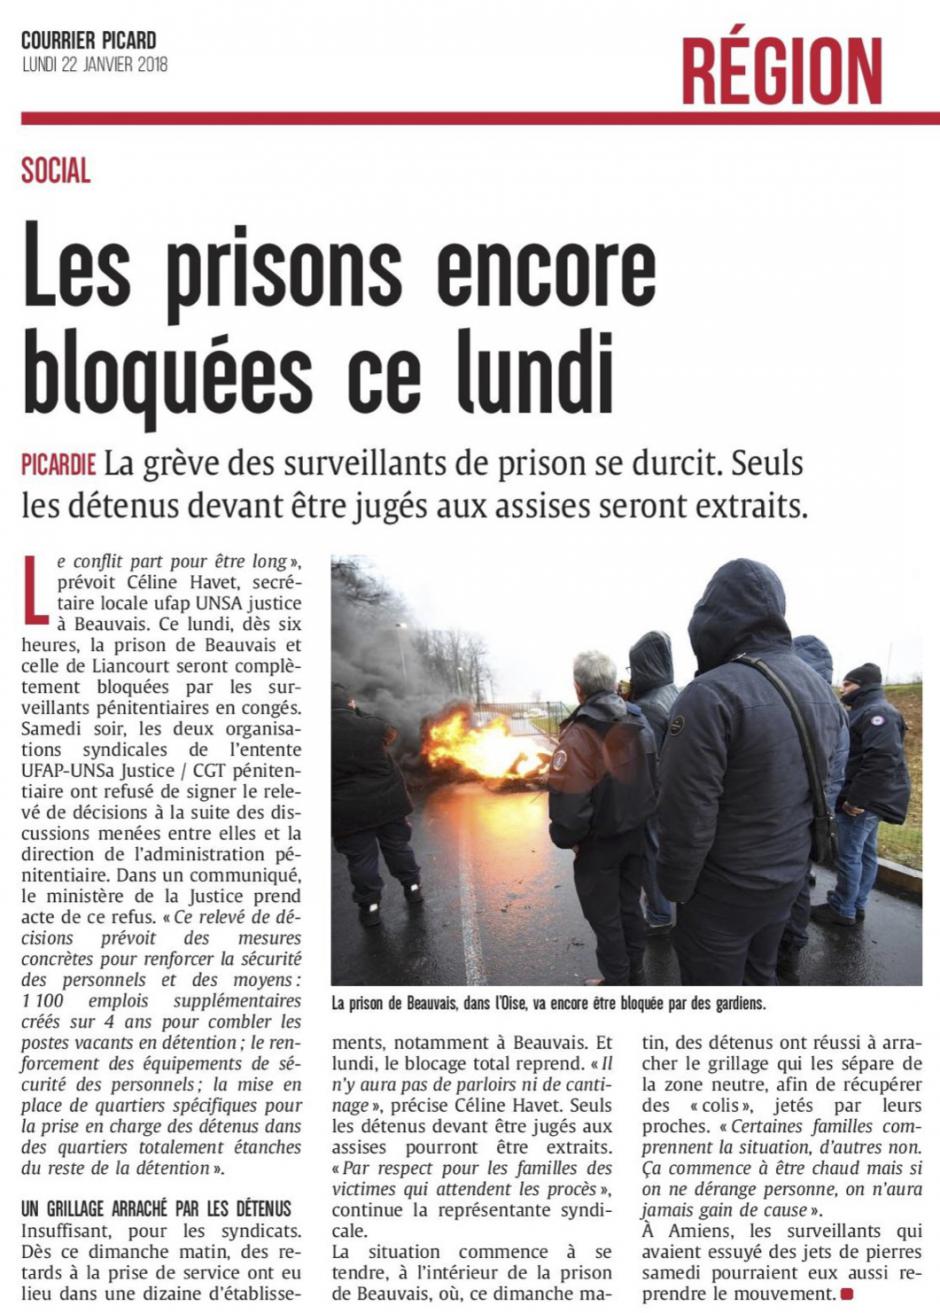 20180122-CP-Picardie-Les prisons encore bloquées ce lundi